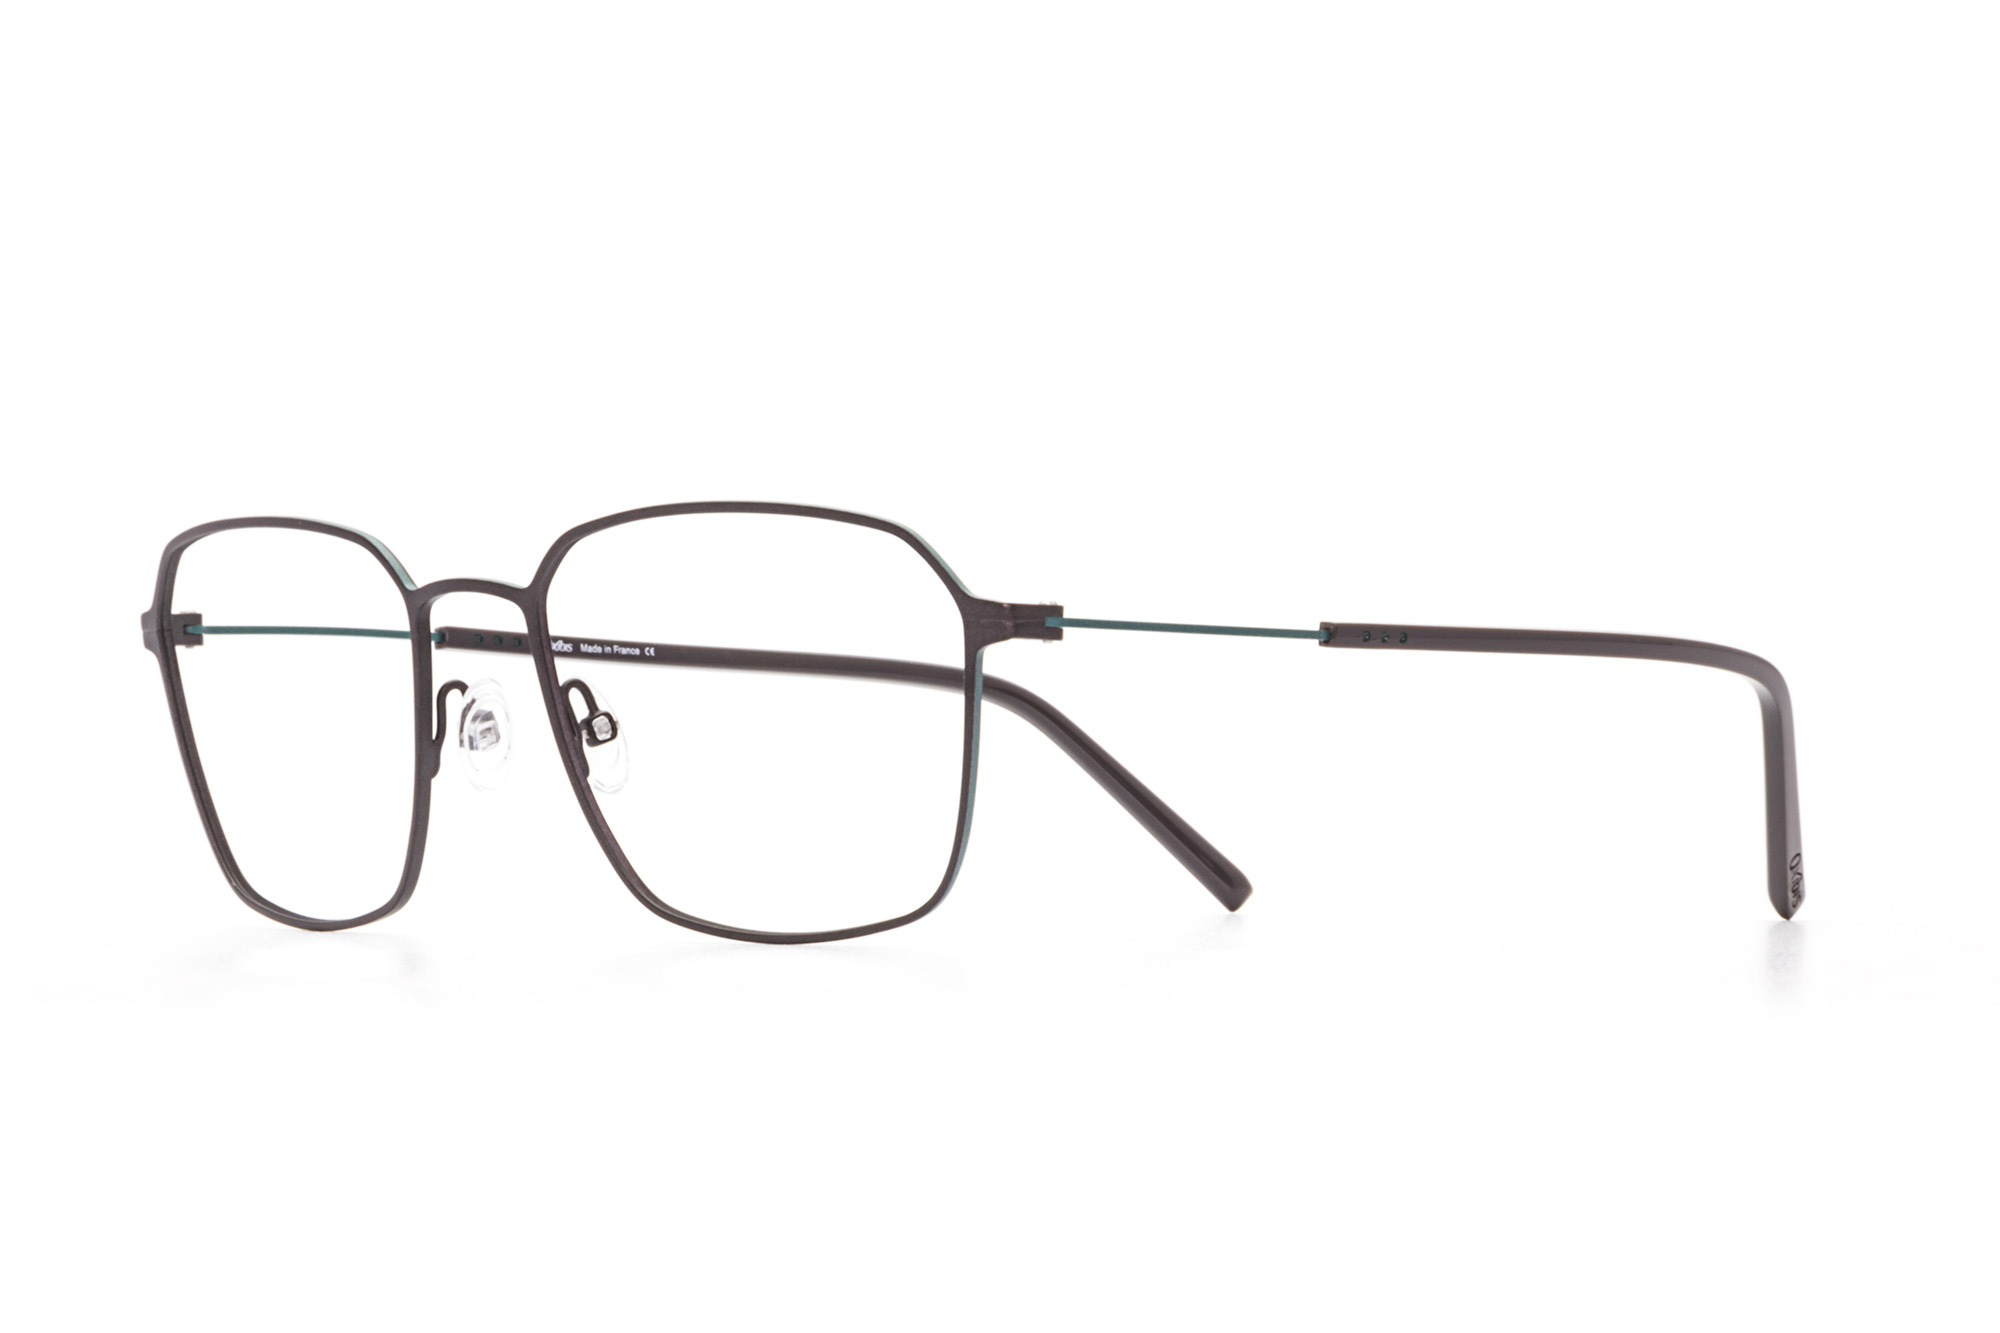 Kullanıma hazır optik tarzda işlenmiş camları ve optik uyumlu çerçevesiyle Oxibis Boost BO5C2 55 büyük ekartman gri ve yeşil renkli altıgen ve dikdörtgen model erkek gözlüğünü optisyen veya gözlükçülerin sunacağı numarasız veya numaralı cam özelleştirmeleriyle size en yakın gözlükçüden satın alabilirsiniz.